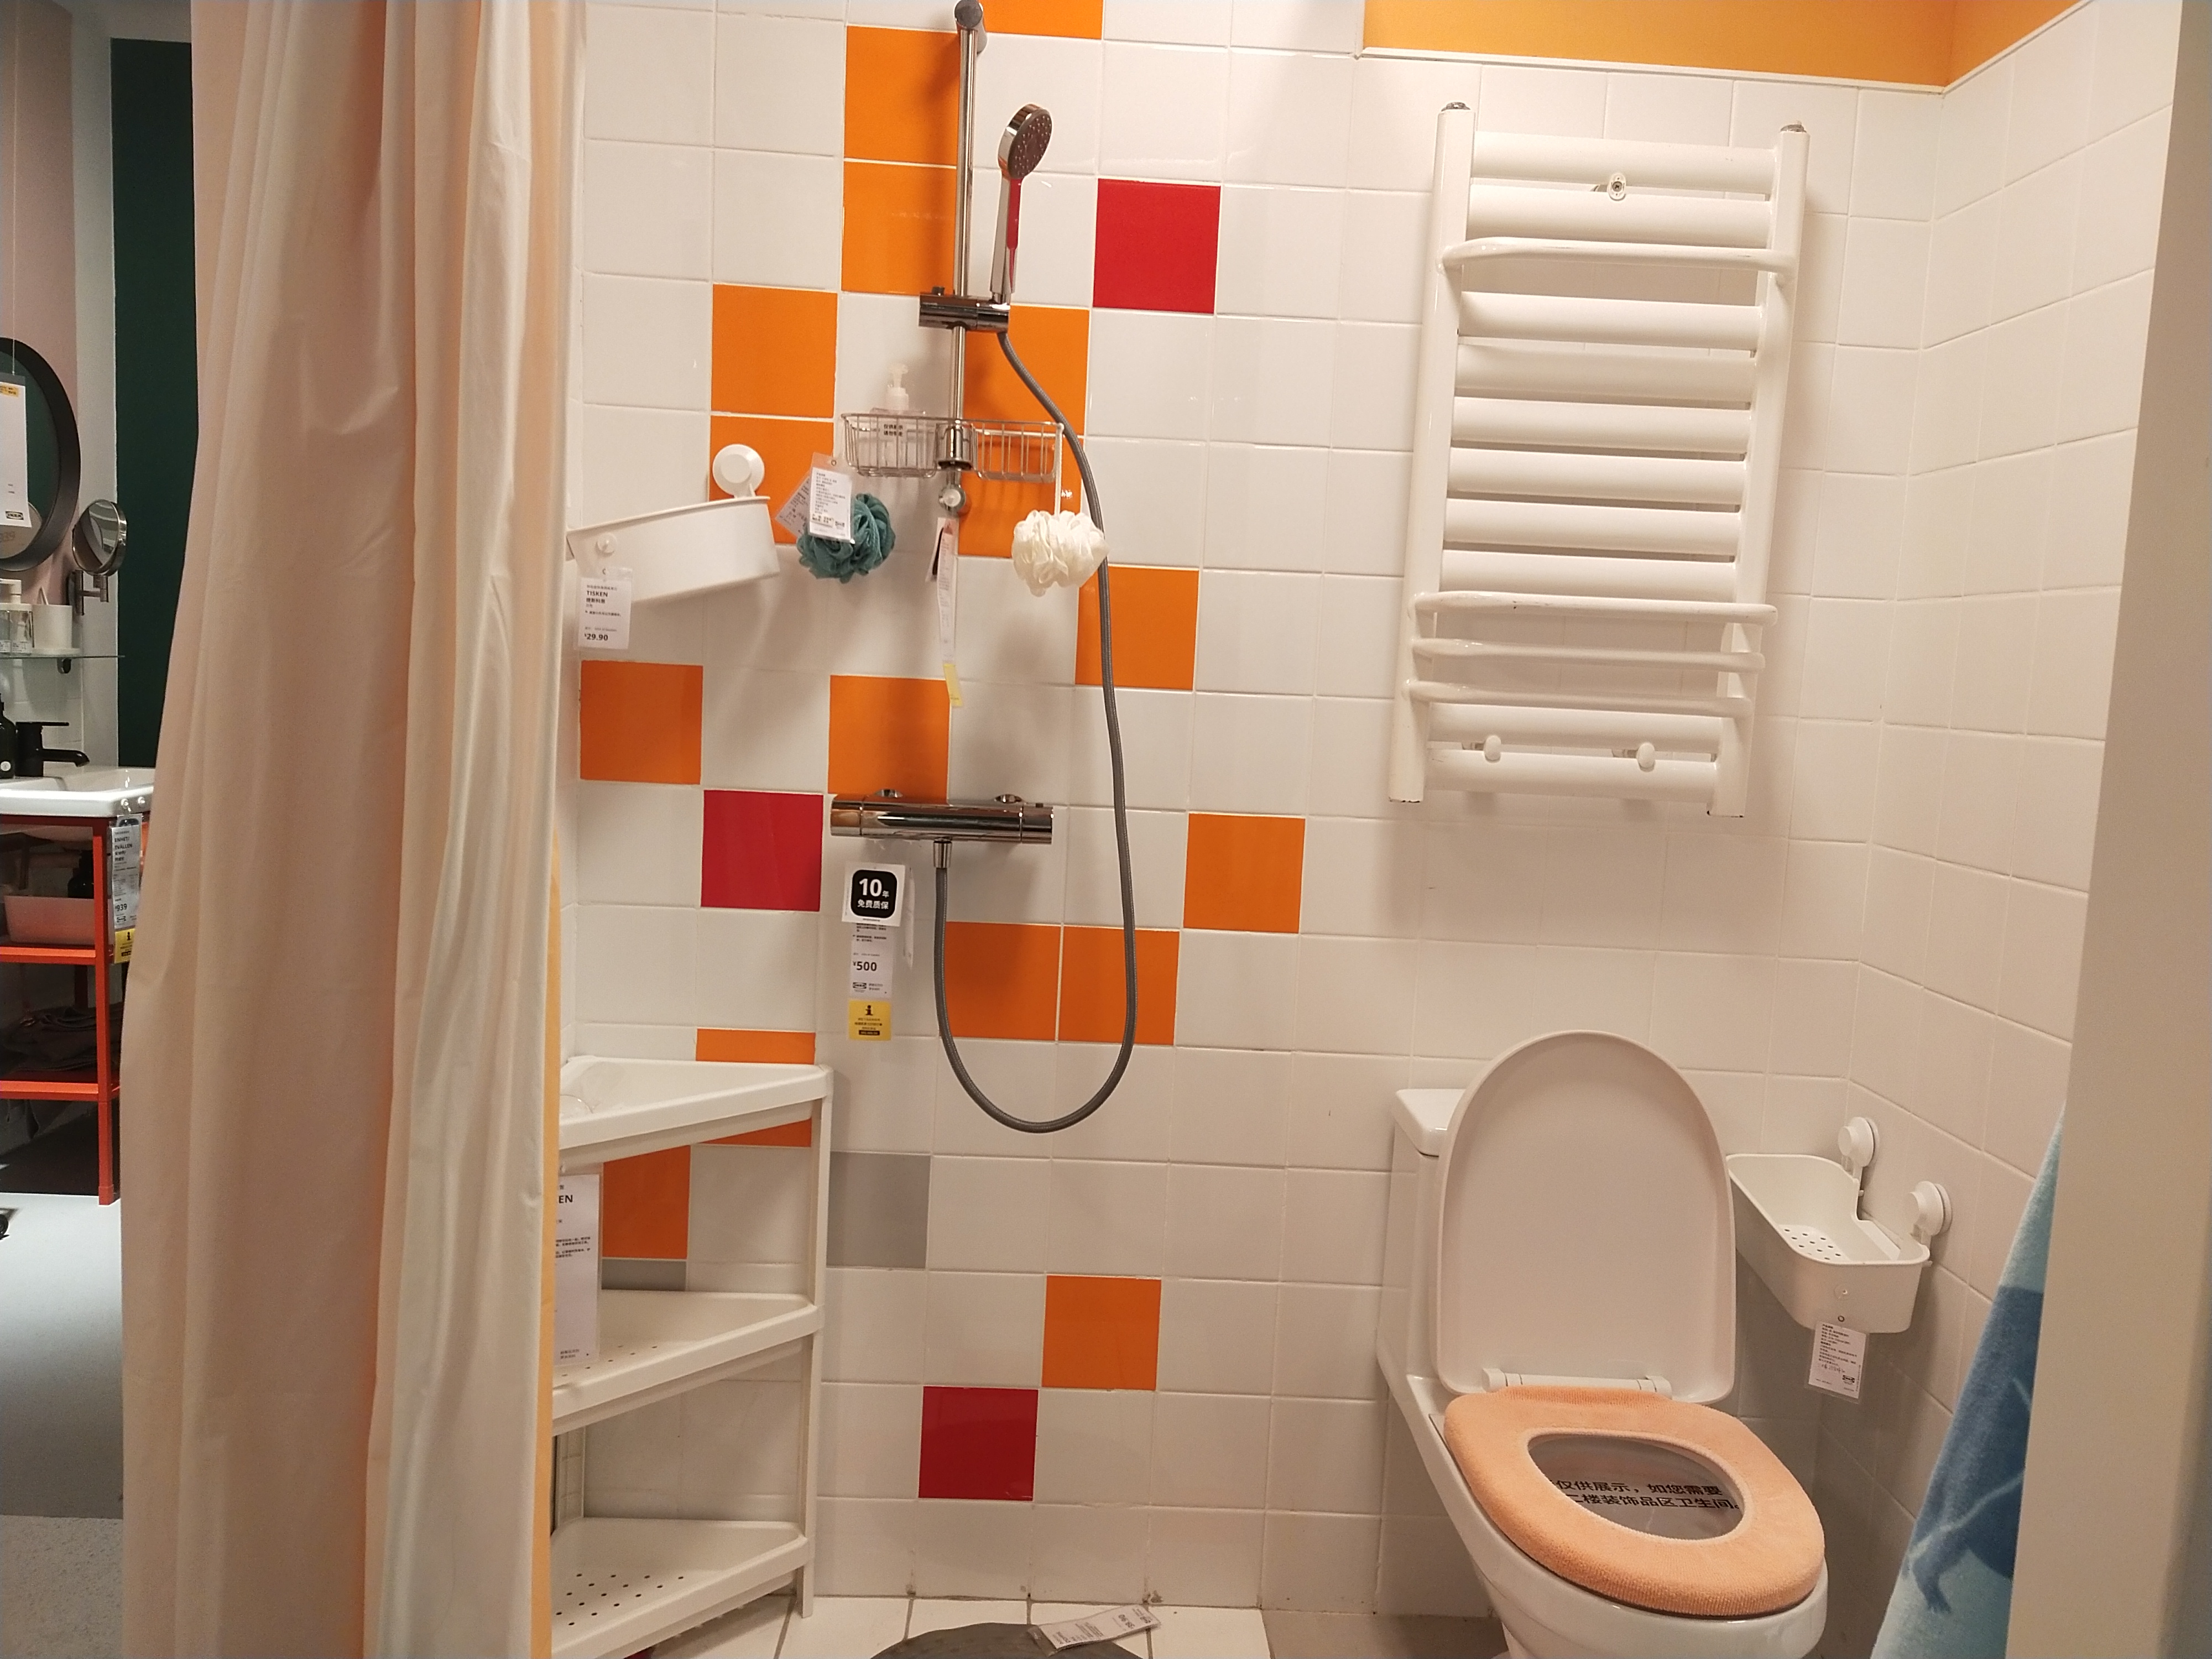 技術創新為底蘊 以貼心服務打造智能衛浴場景 